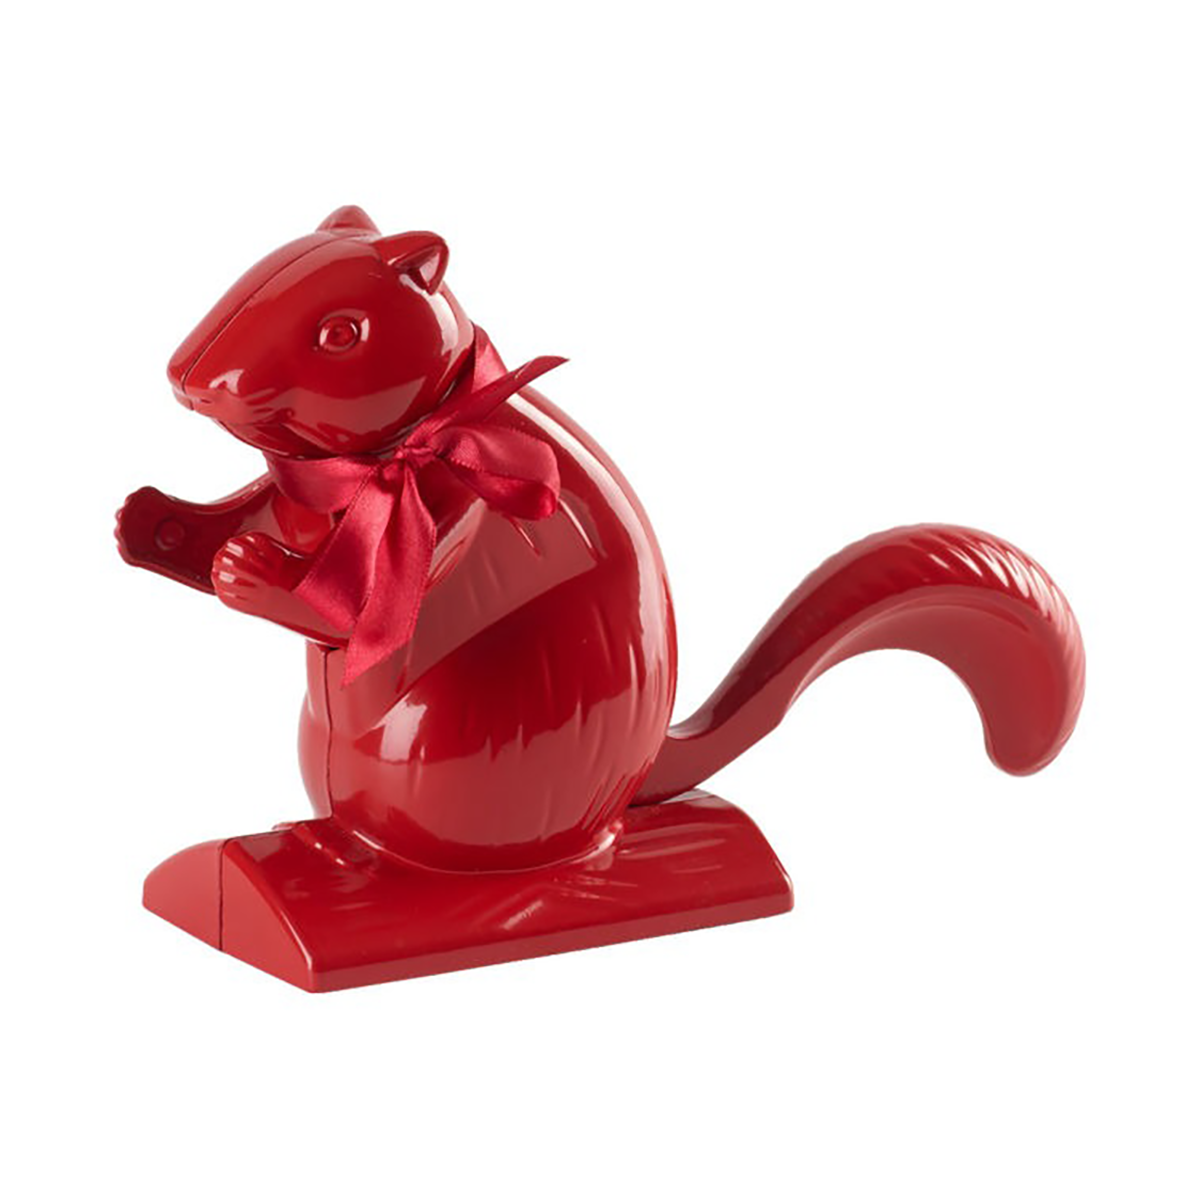 villeroy & boch écureuil casse-noix winter collage rouge